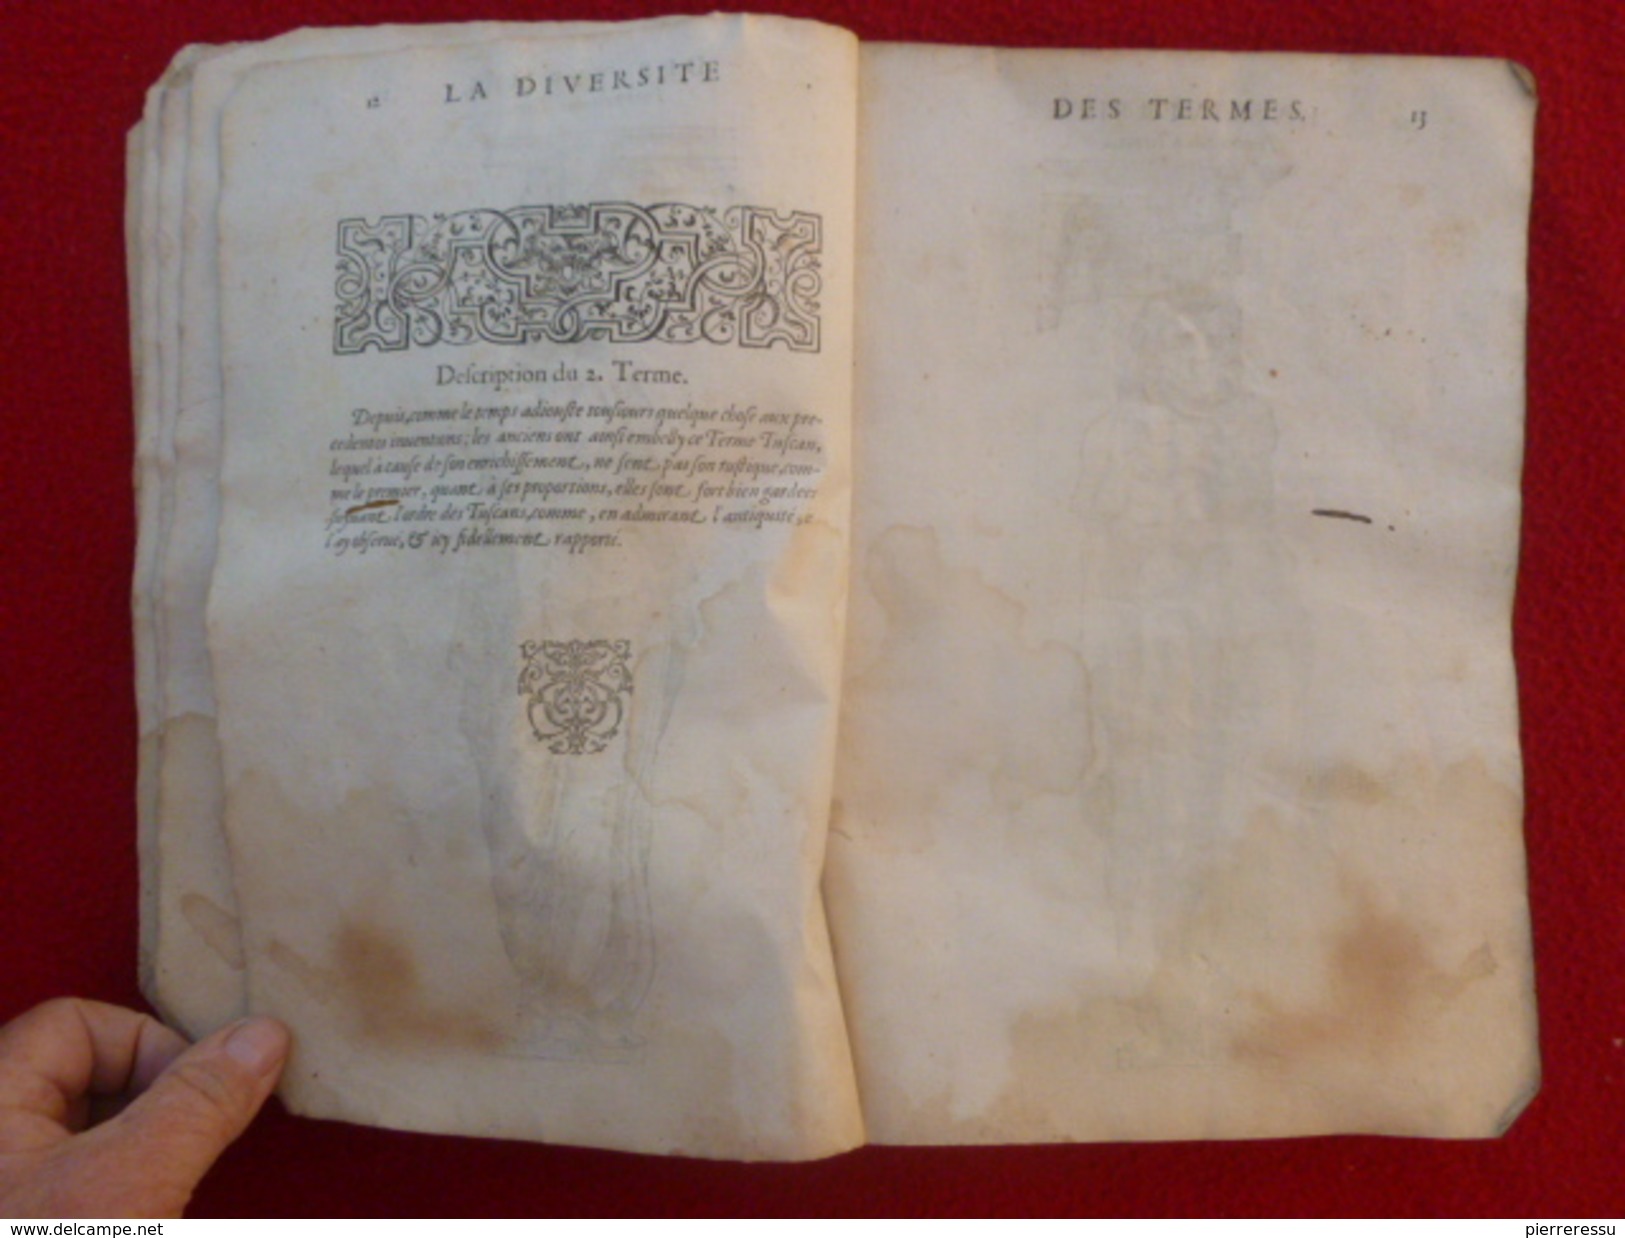 LIVRE JEAN MARCORELLE 1572 HUGUES SAMBIN ARCHITECTE LA DIVERSITE DES TERMES AU SEIGNEUR ELEONOR CHABOT - Before 18th Century